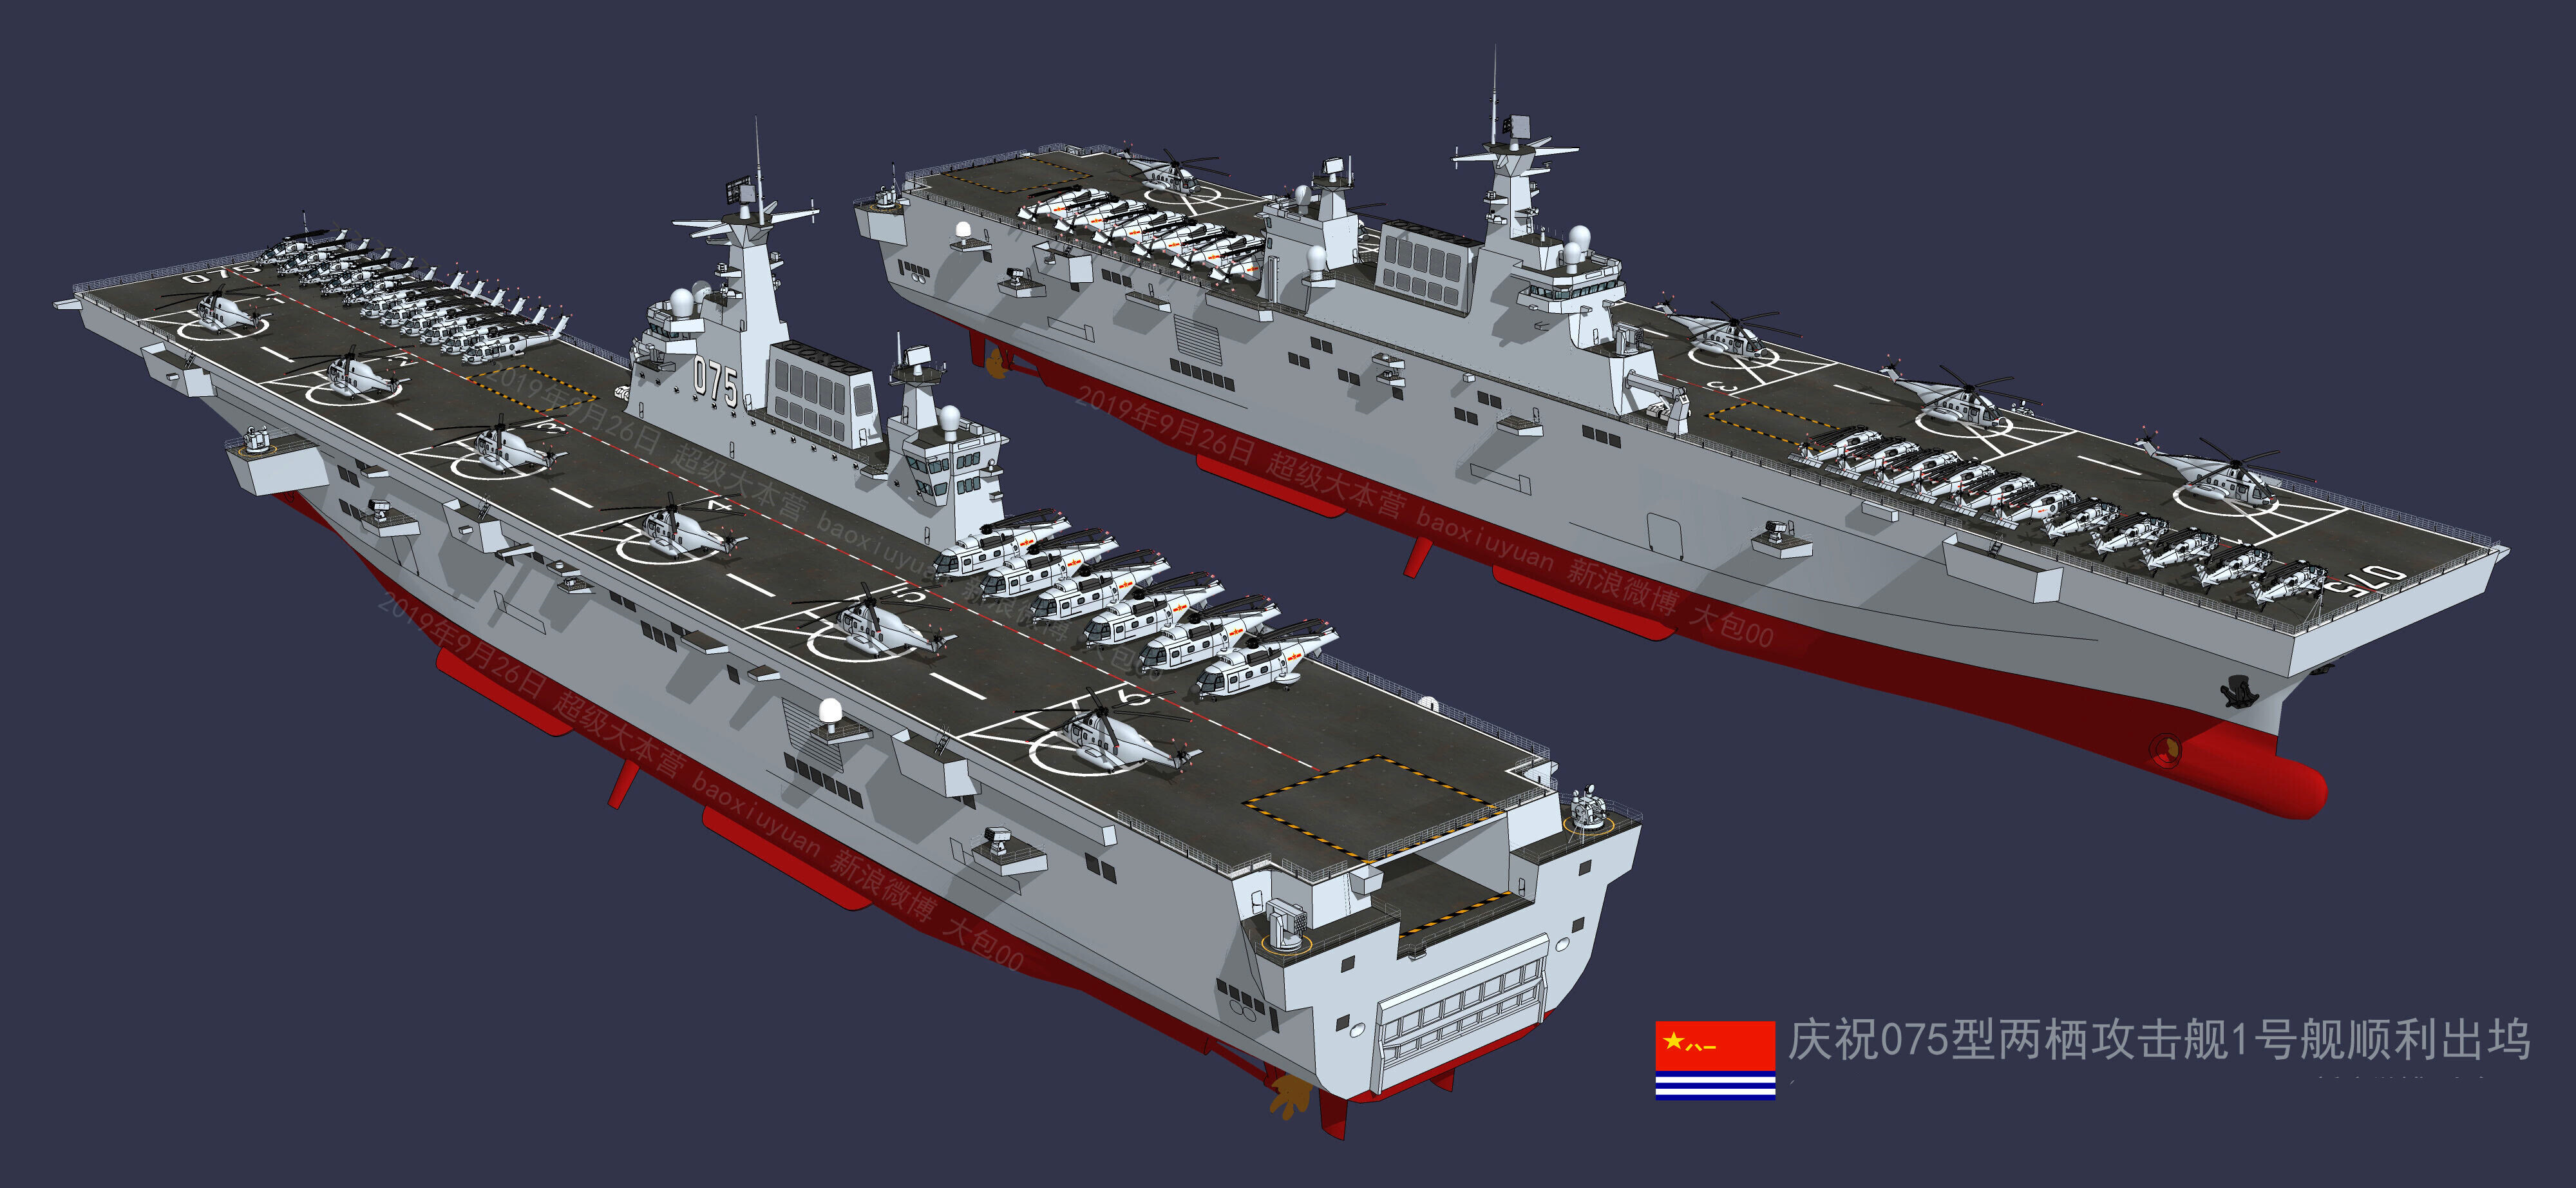 075二号舰服役在即中国海军两栖攻击舰进展神速075或建造8艘